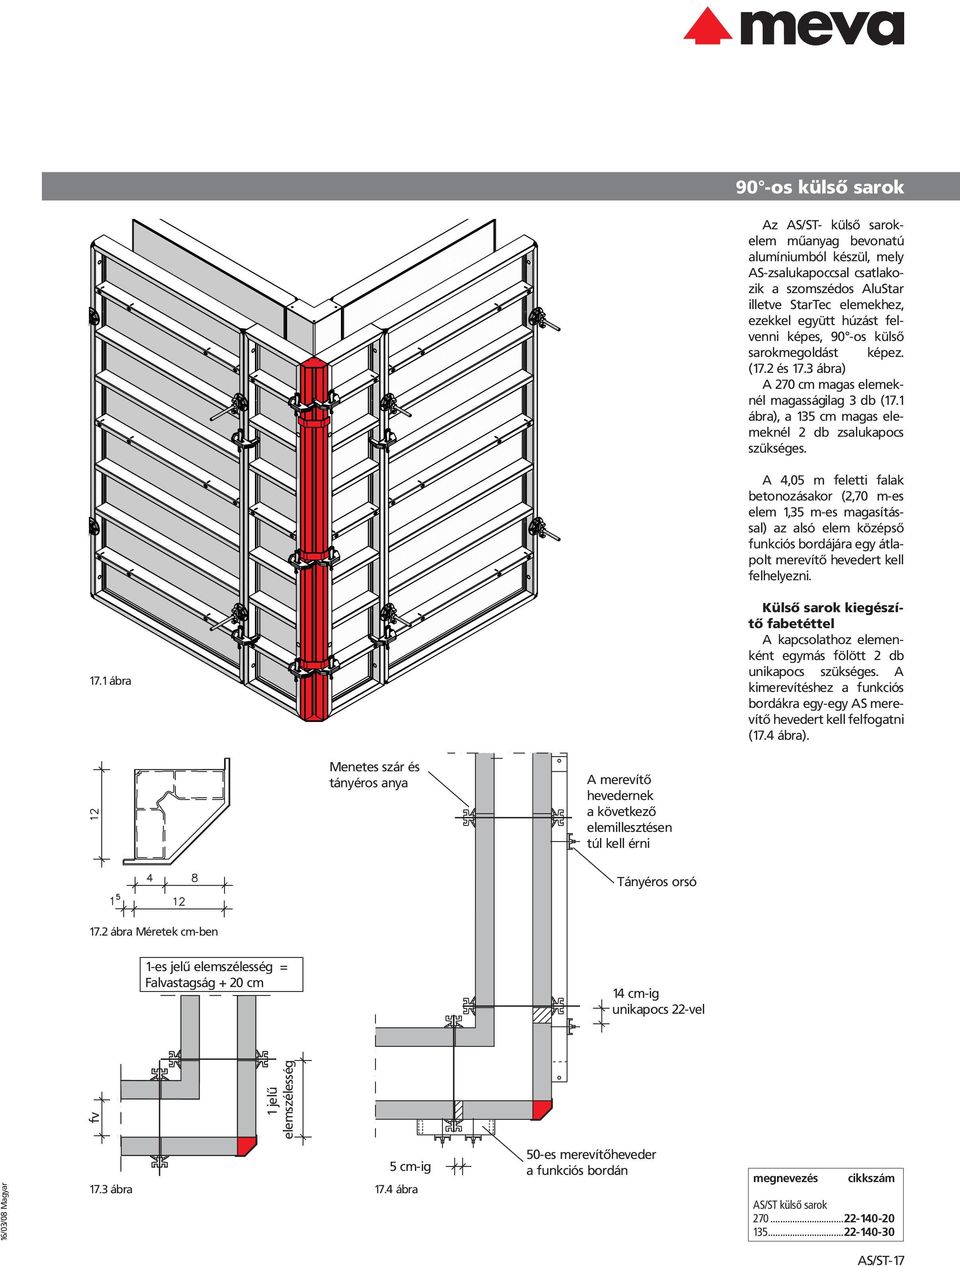 A 4,05 m feletti falak betonozásakor (2,70 m-es elem 1,35 m-es magasítás sal) az alsó elem középső funkciós bordájára egy átla polt merevítő hevedert kell felhelyezni. 17.